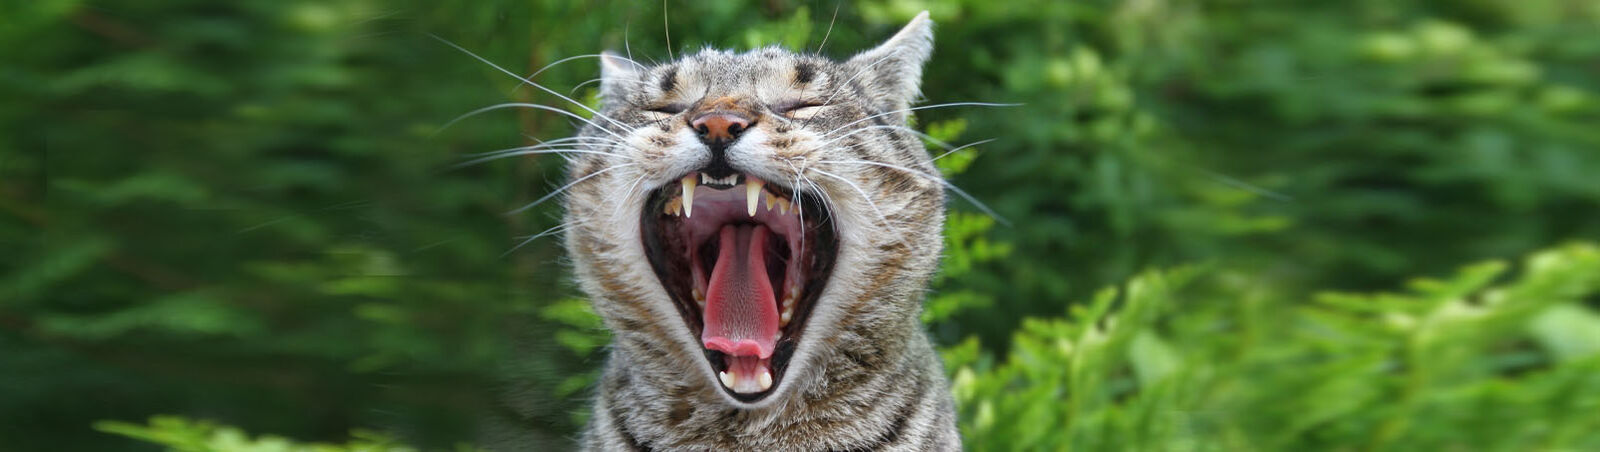 Gähnende Katze mit gut sichtbaren Zähnen